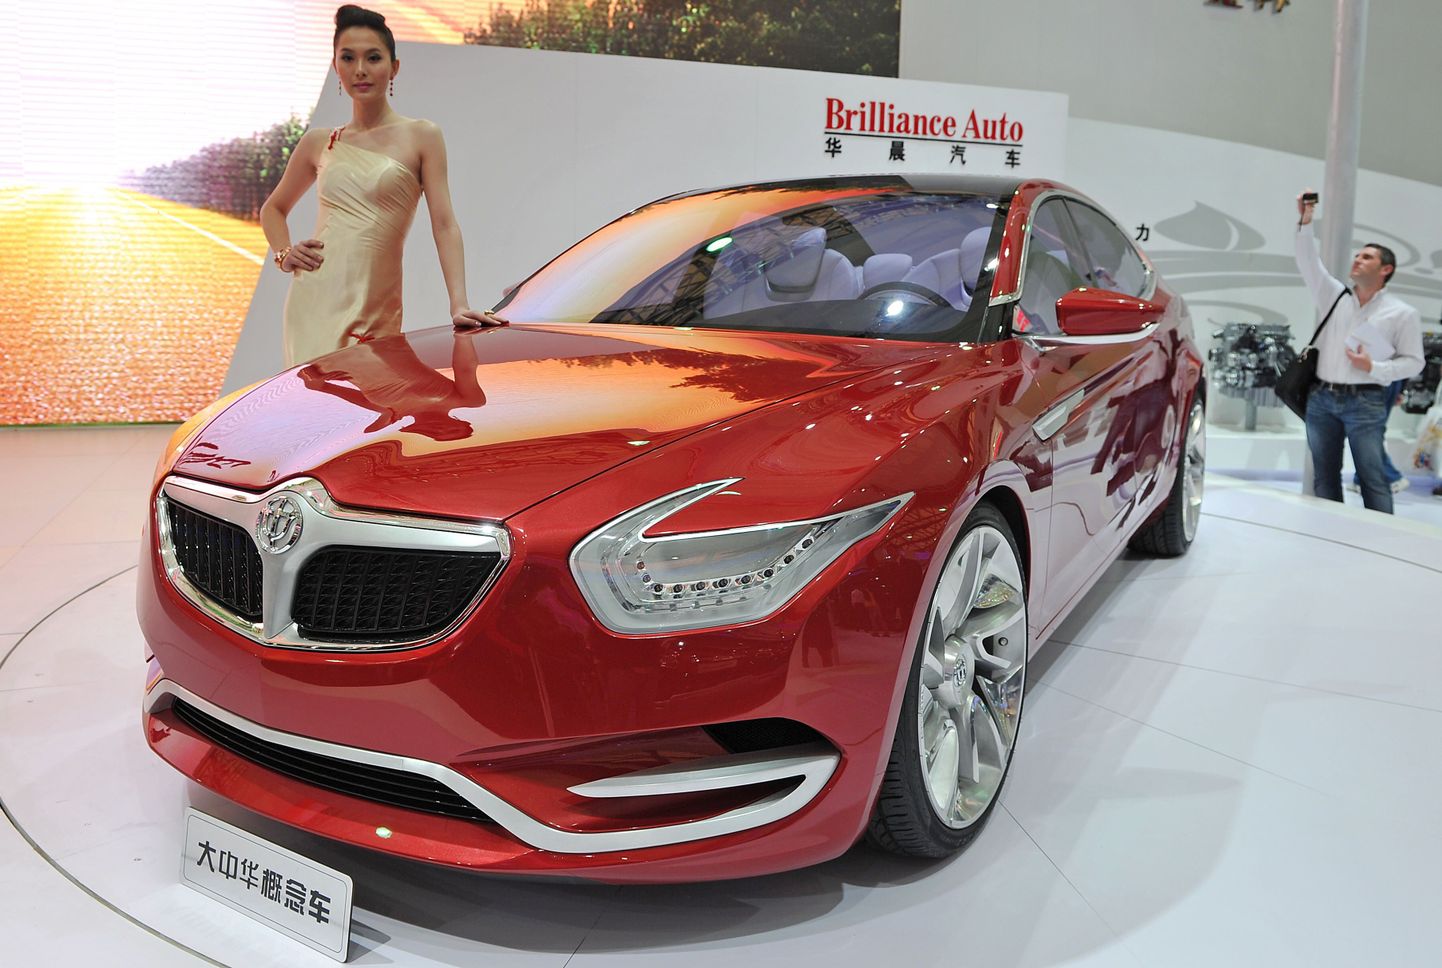 Brilliance'i auto Shanghai autonäitusel. Uue auto ostuga käib enamasti kaasa kaskokindlustus.